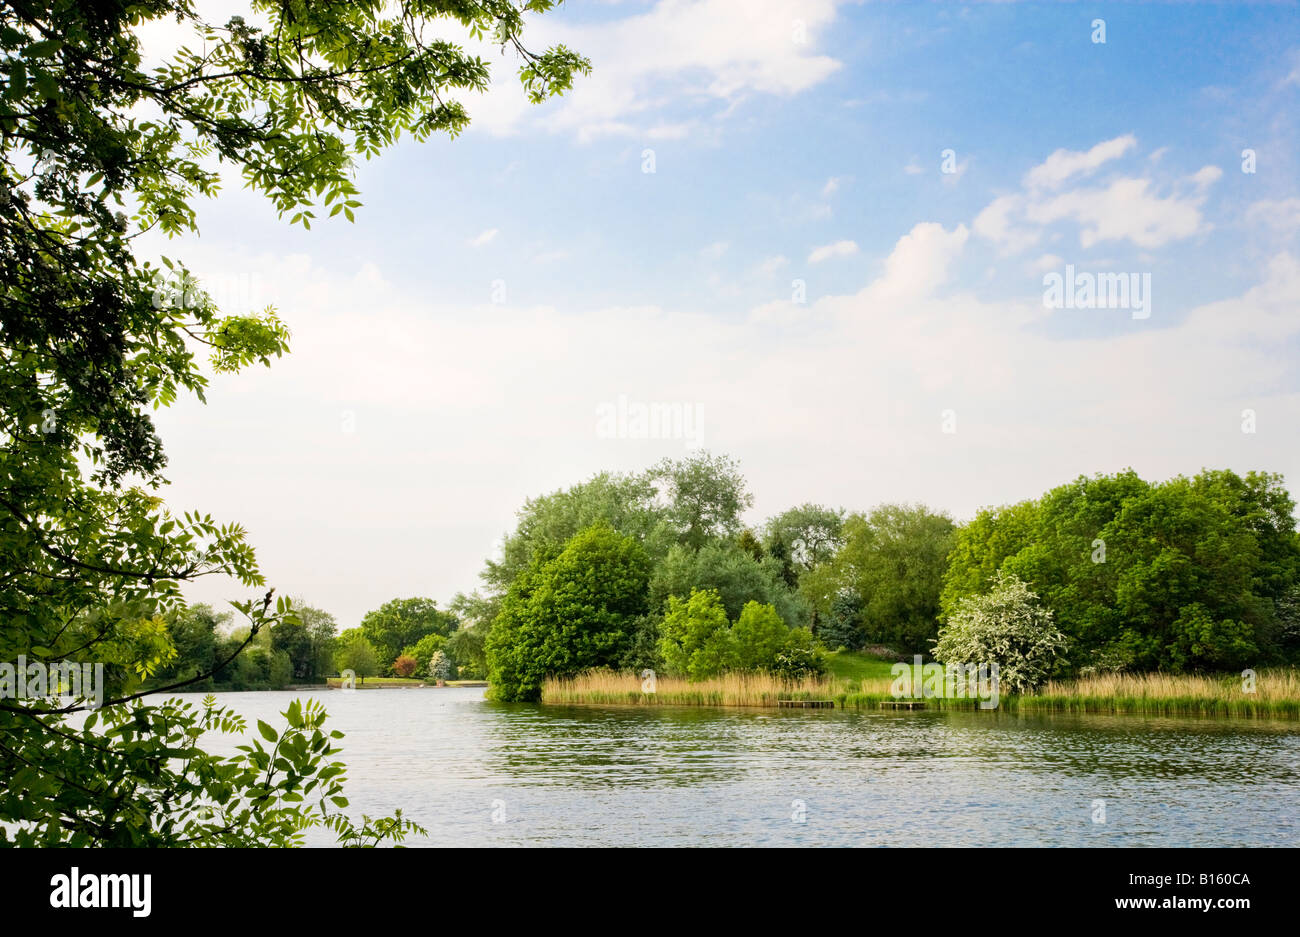 Le lac sur une journée ensoleillée en été à Coate Water Country Park, une réserve naturelle locale près de Swindon, Wiltshire, England, UK Banque D'Images